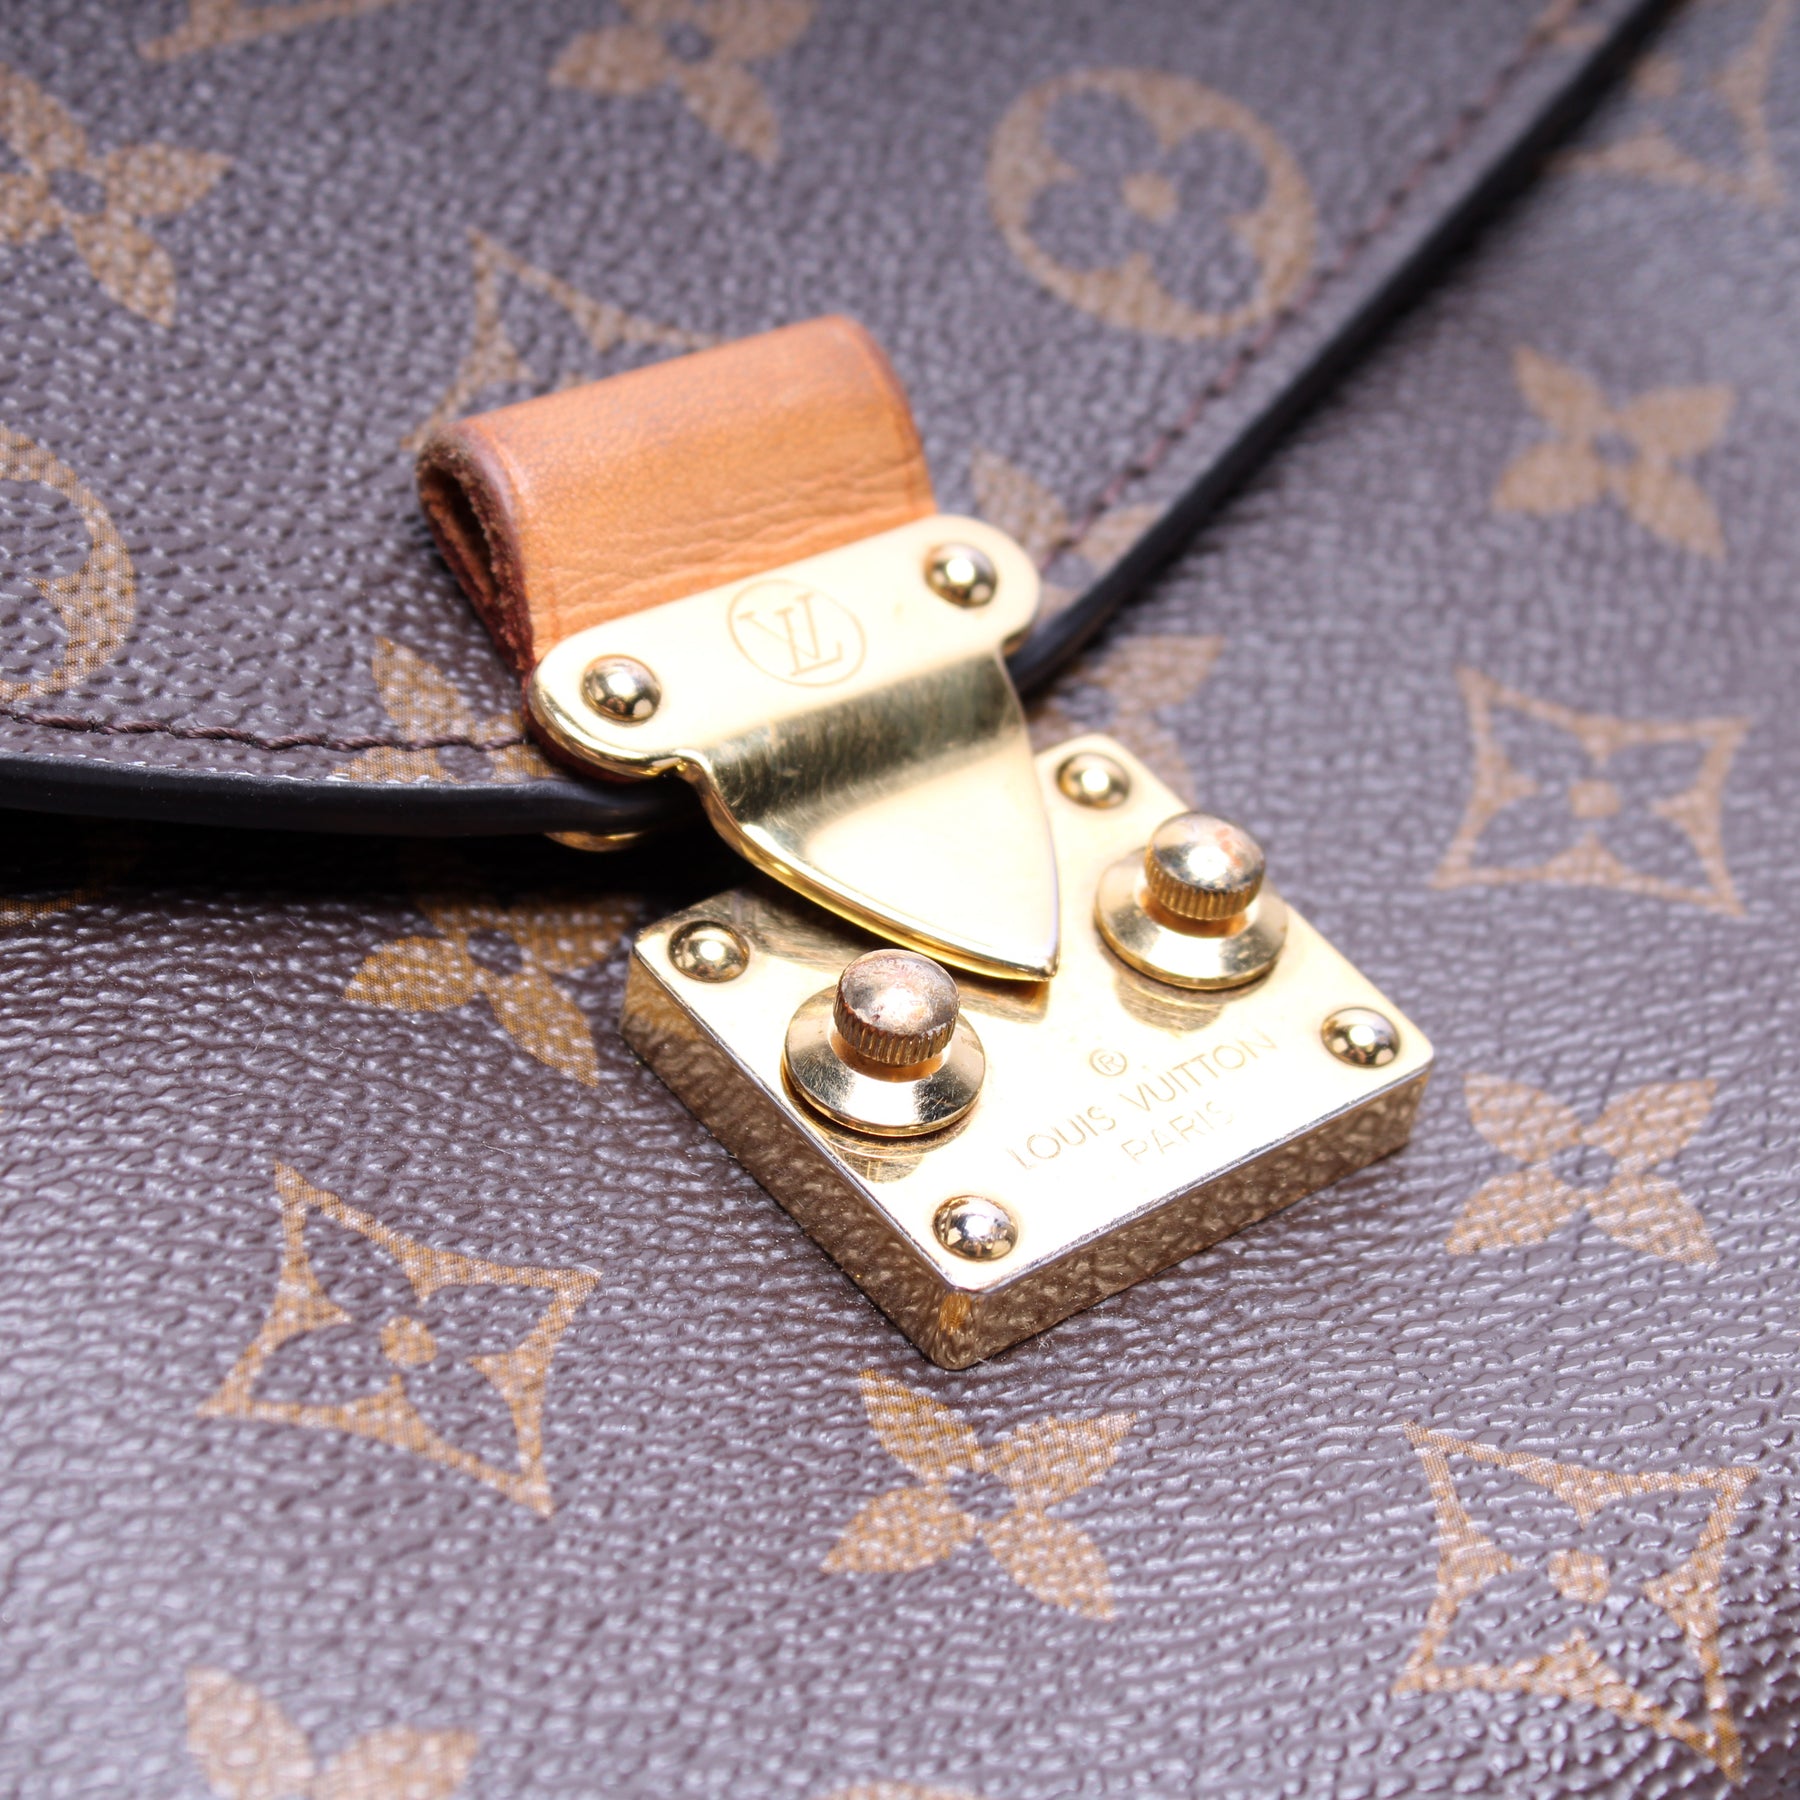 Pochette Metis Monogram – Keeks Designer Handbags